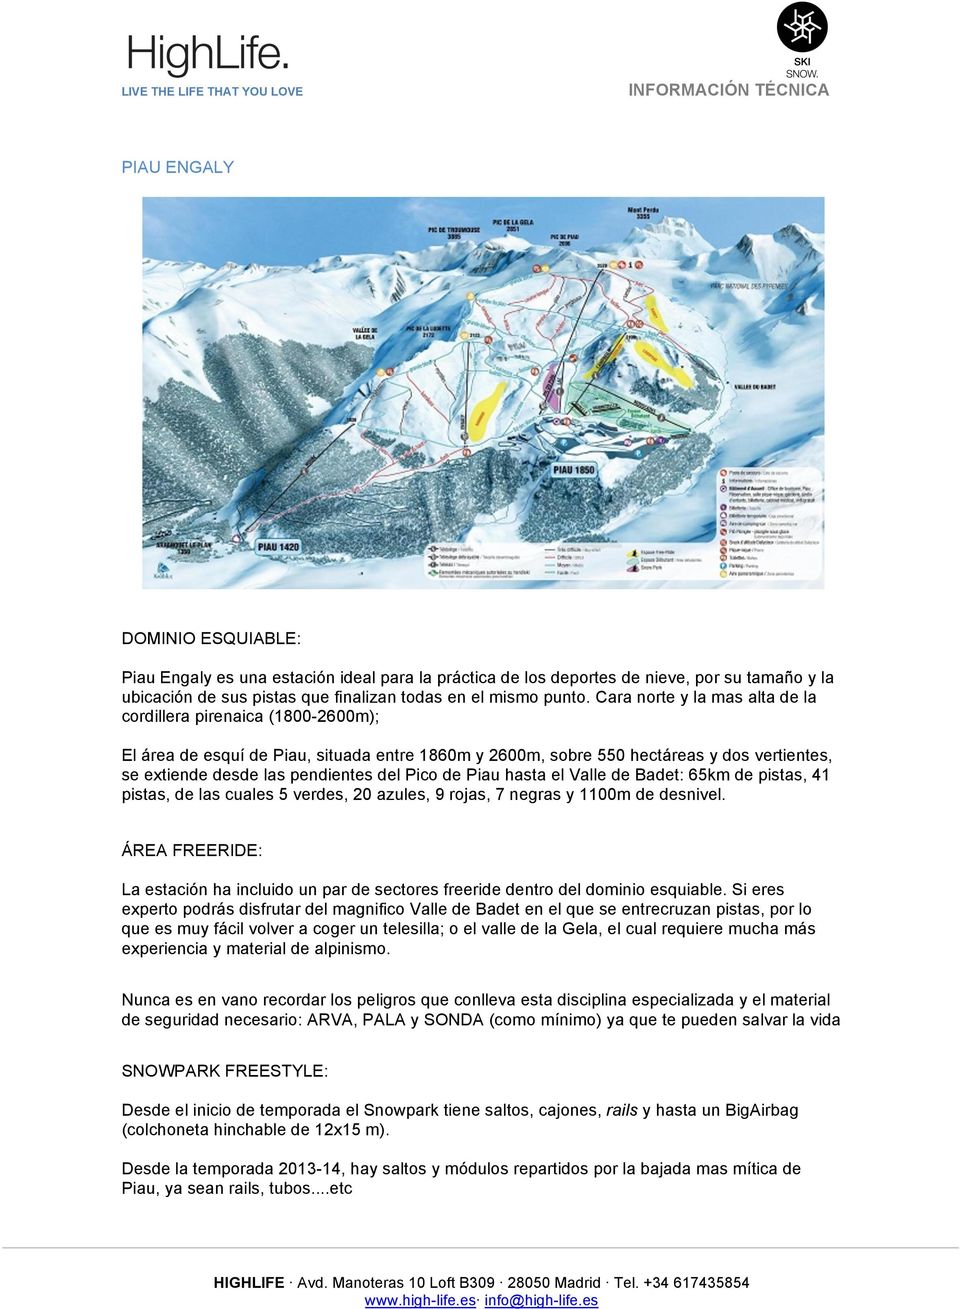 Pico de Piau hasta el Valle de Badet: 65km de pistas, 41 pistas, de las cuales 5 verdes, 20 azules, 9 rojas, 7 negras y 1100m de desnivel.